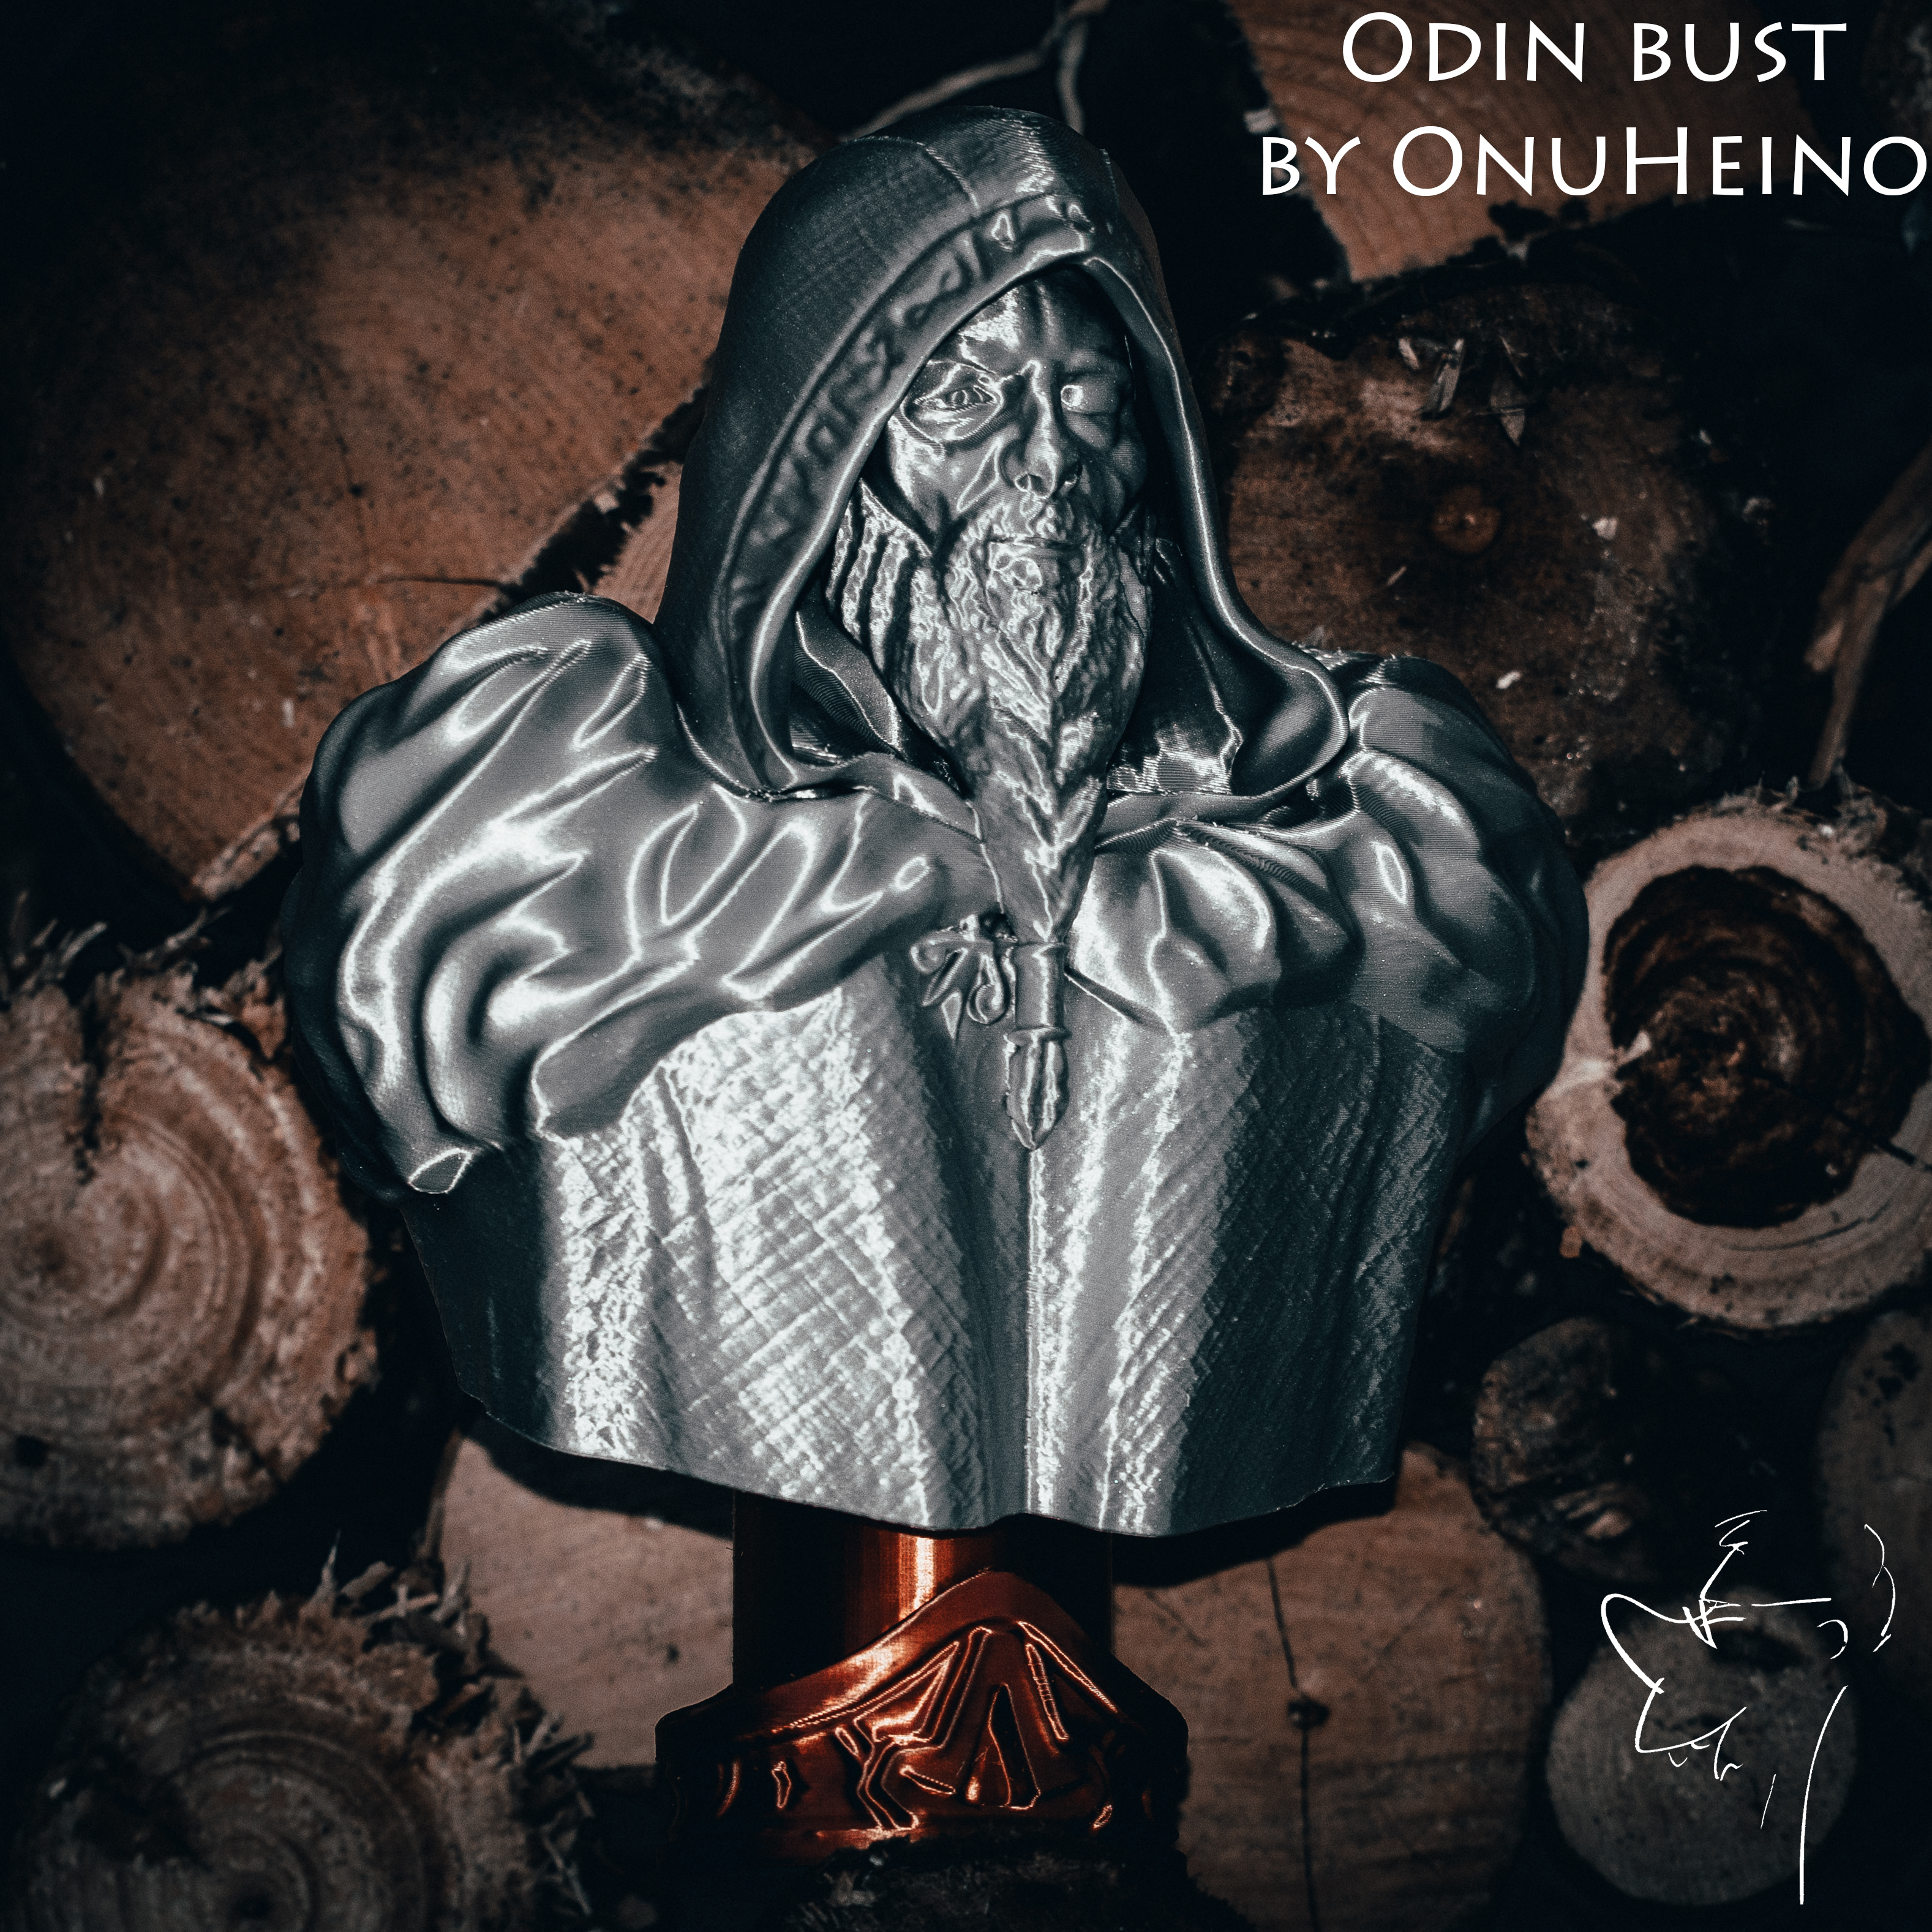 Odin bust